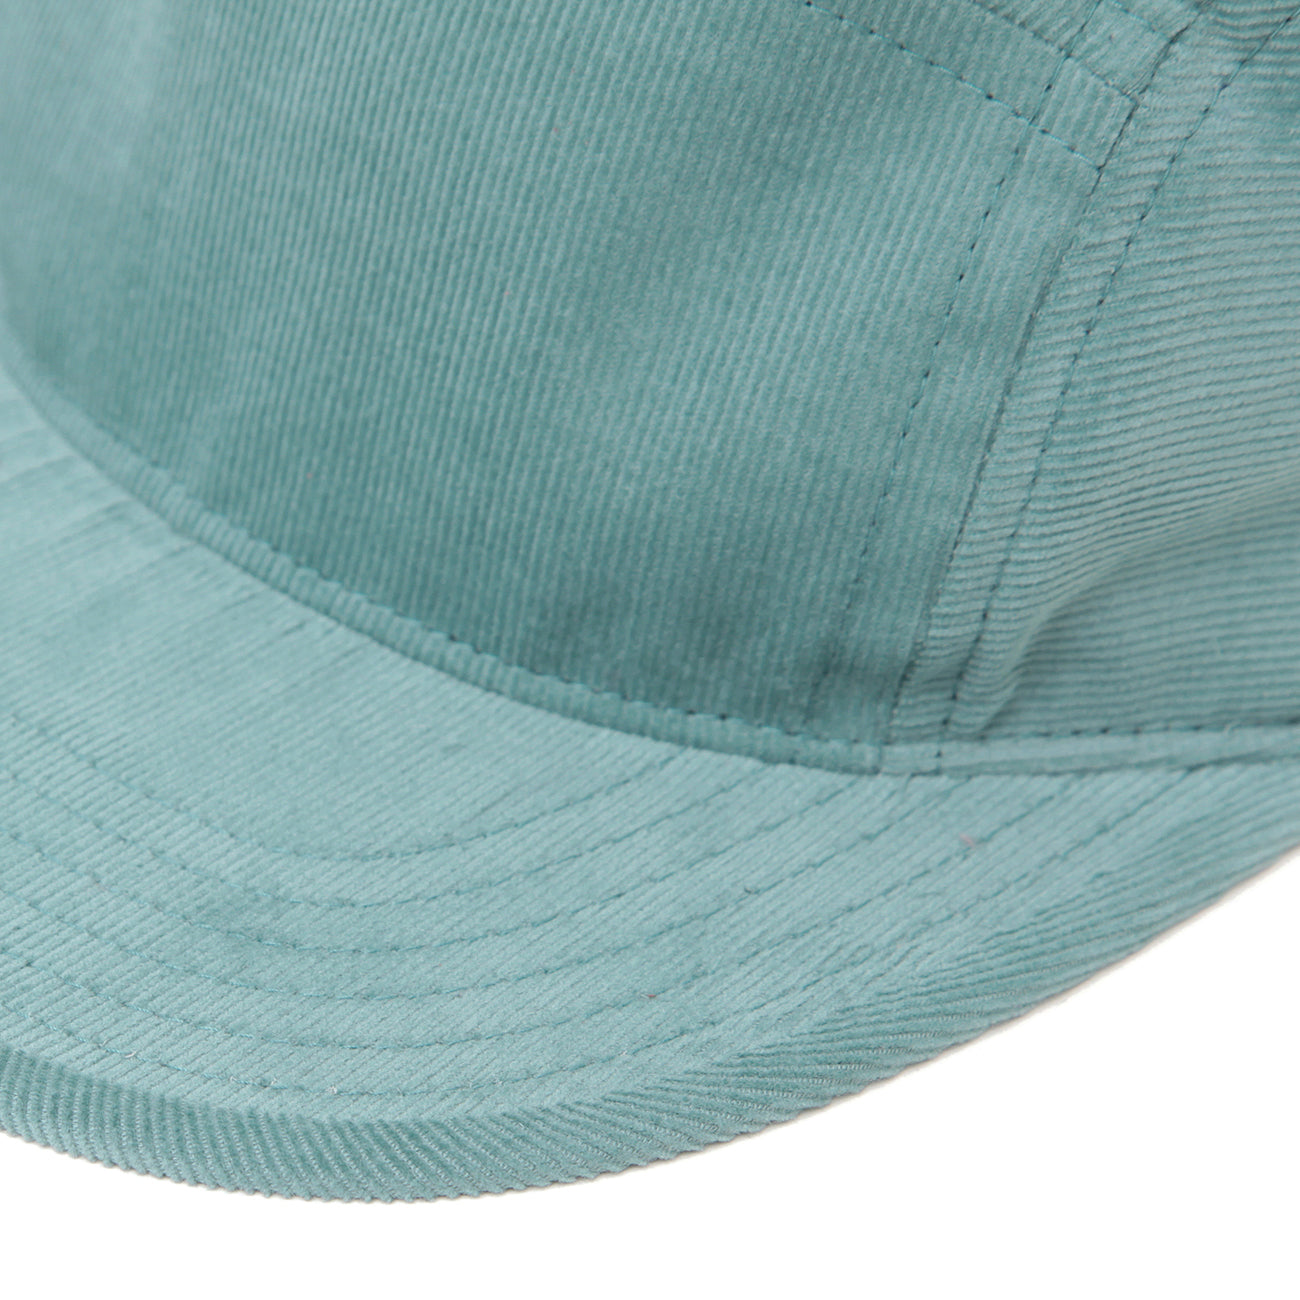 KSK CAP (CORDUROY) - SEE GREEN